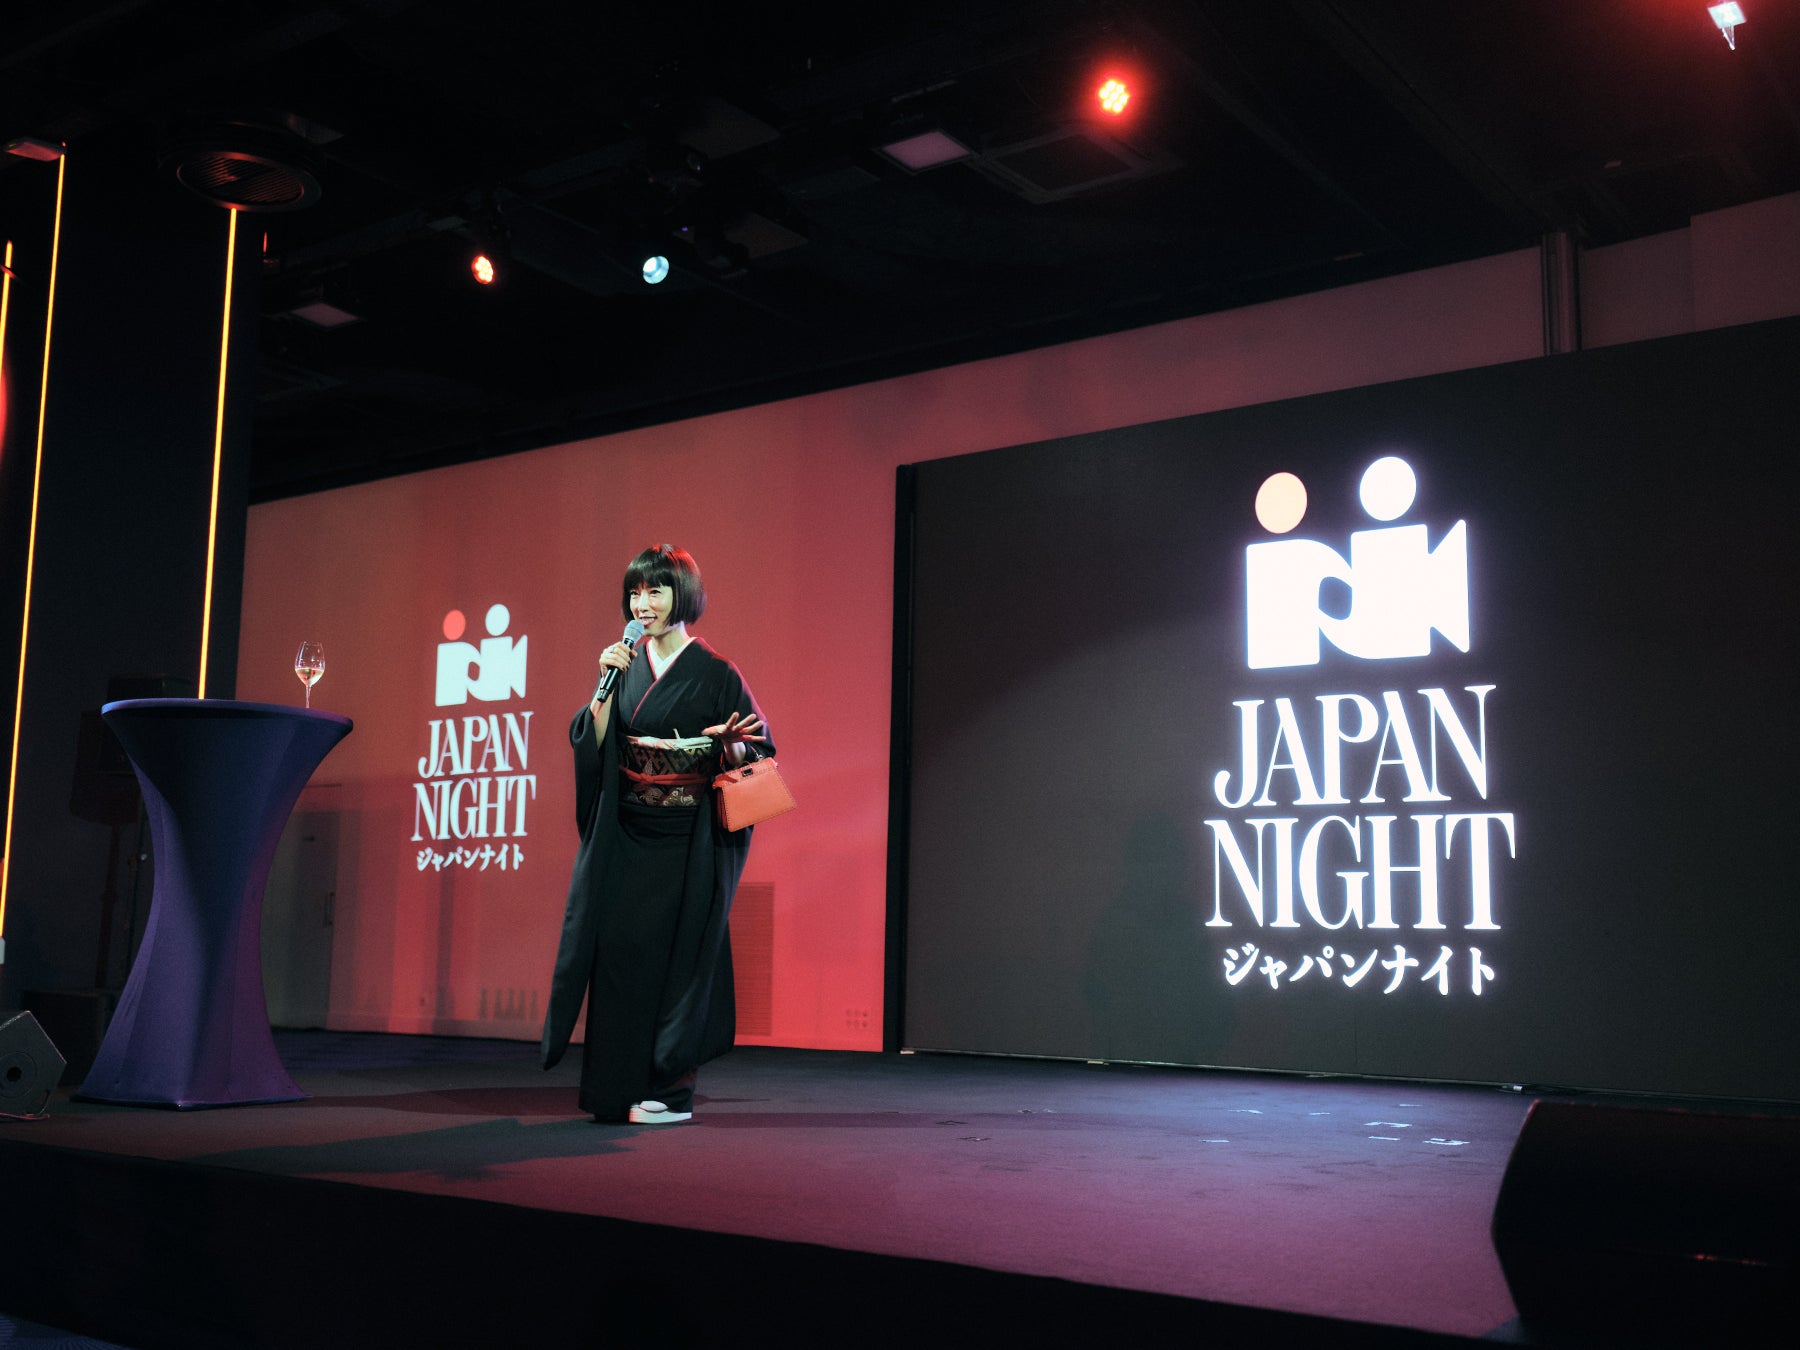 カンヌ国際映画祭のパーティーでスパークリング日本酒『深星』を提供。唯一のスパークリングアルコール飲料と...